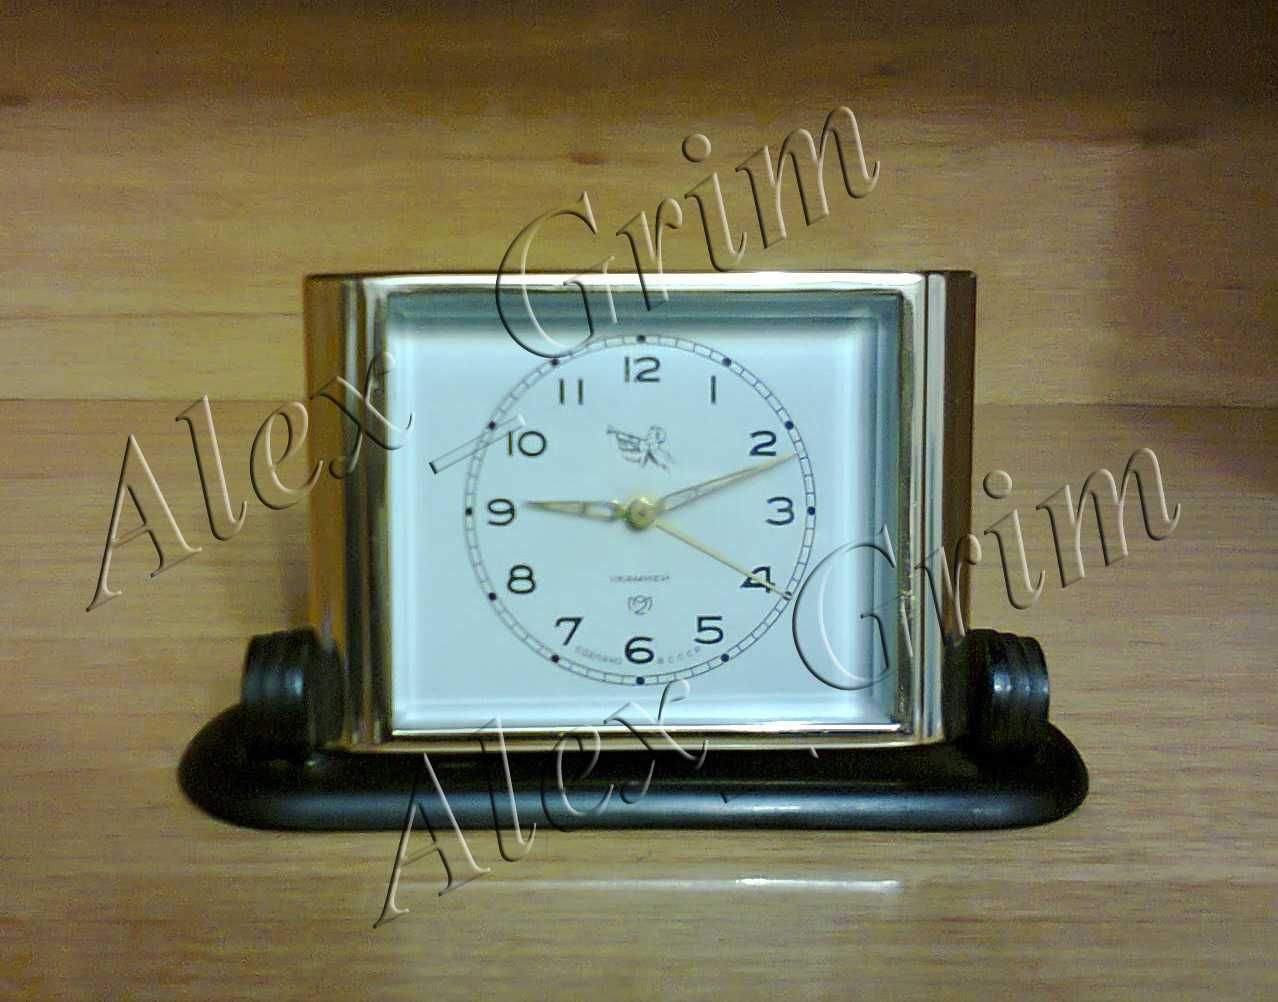 Продам часы-будильник Слава Пионер СССР